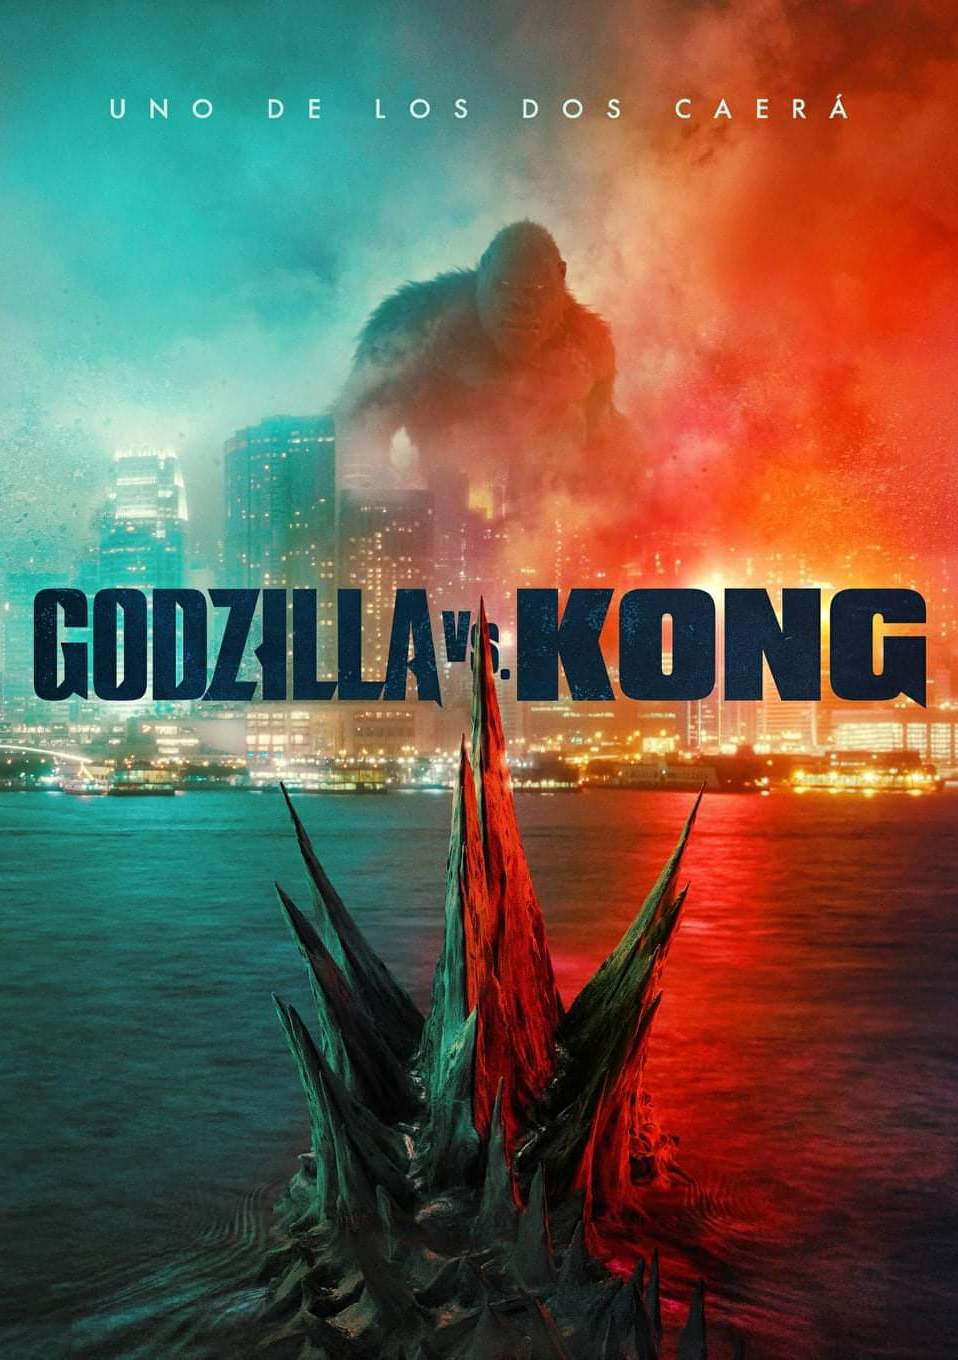 MonsterVerse (Godzilla-Kong) [2014-2021] (1080p) + [Comics]